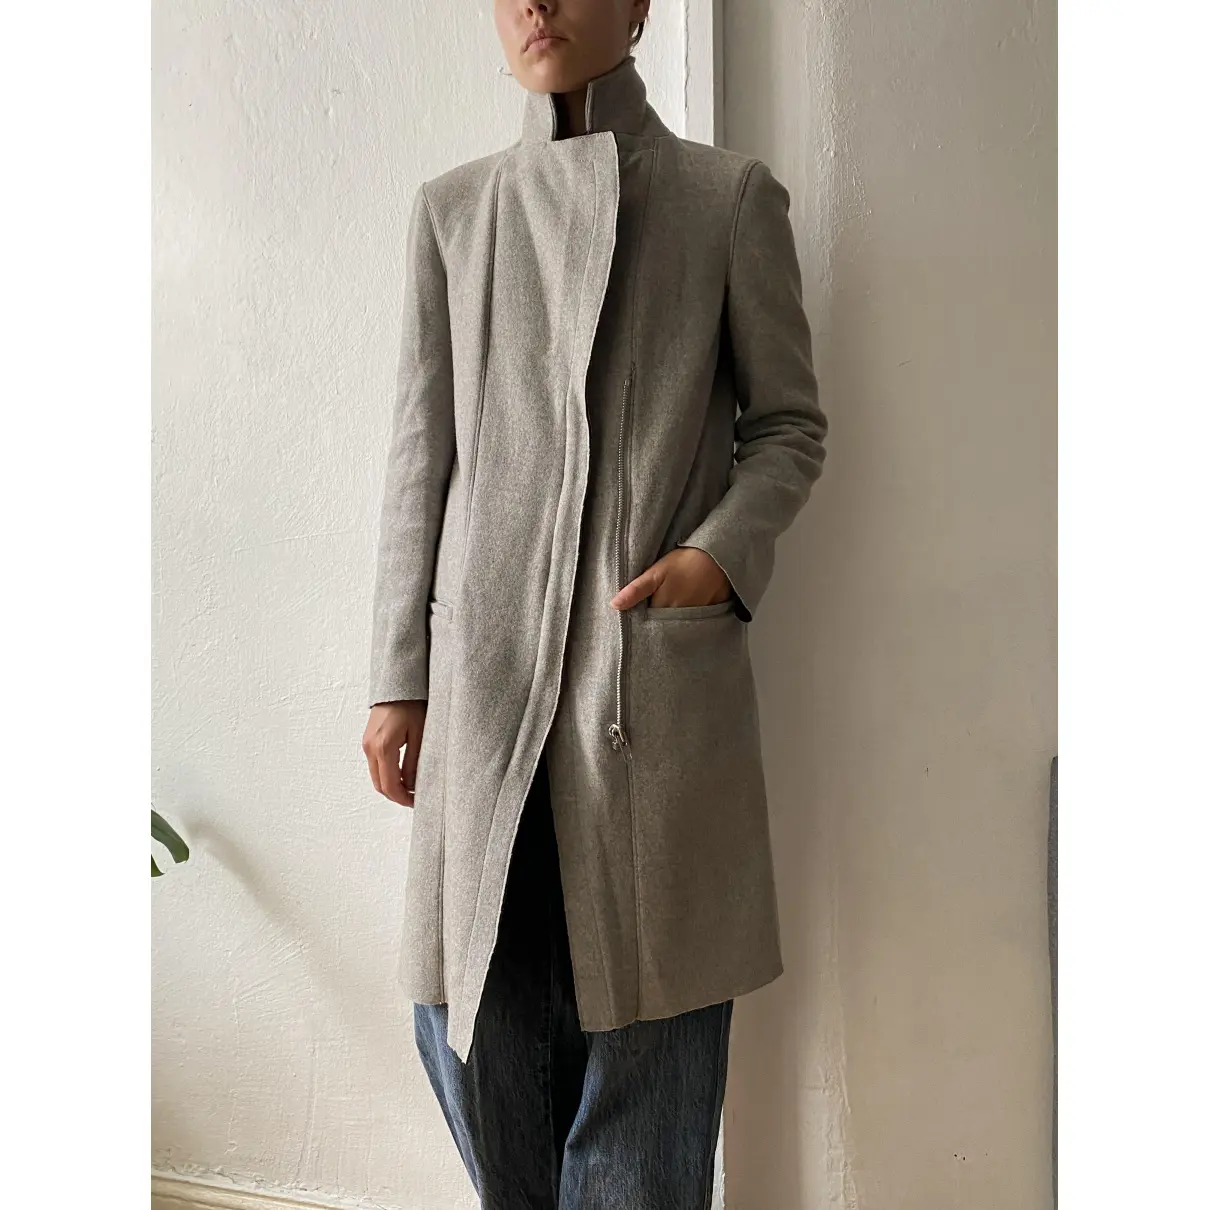 Buy Helmut Lang Wool coat online